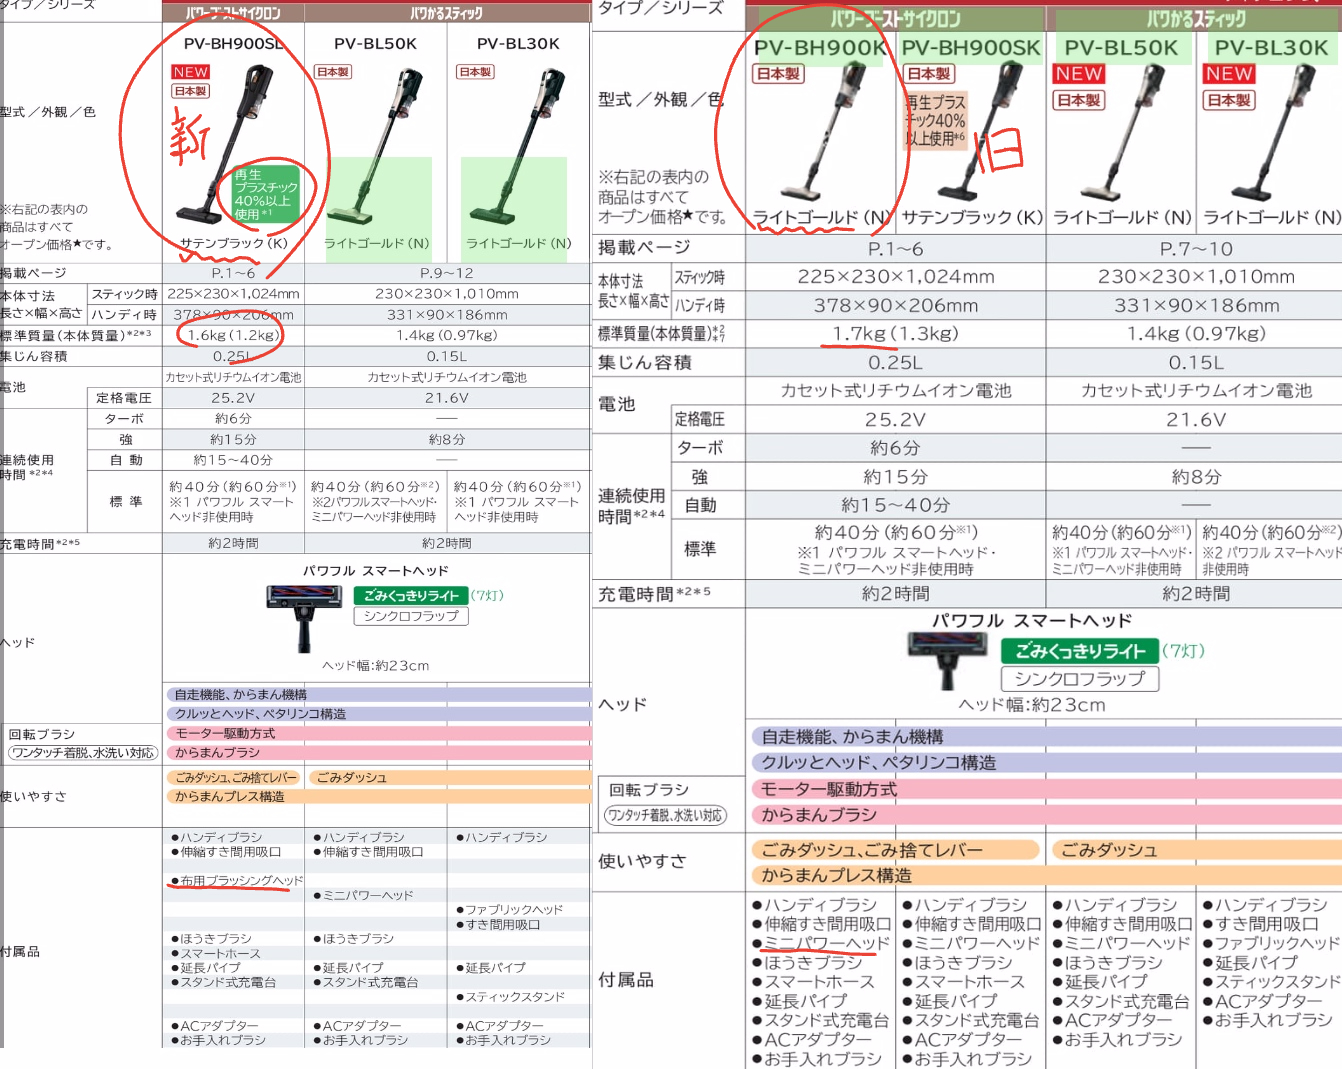 1 - ⑤機種【鬼比較】PV-BH900SLとPV-BH900SK 新旧違い口コミ レビュー!